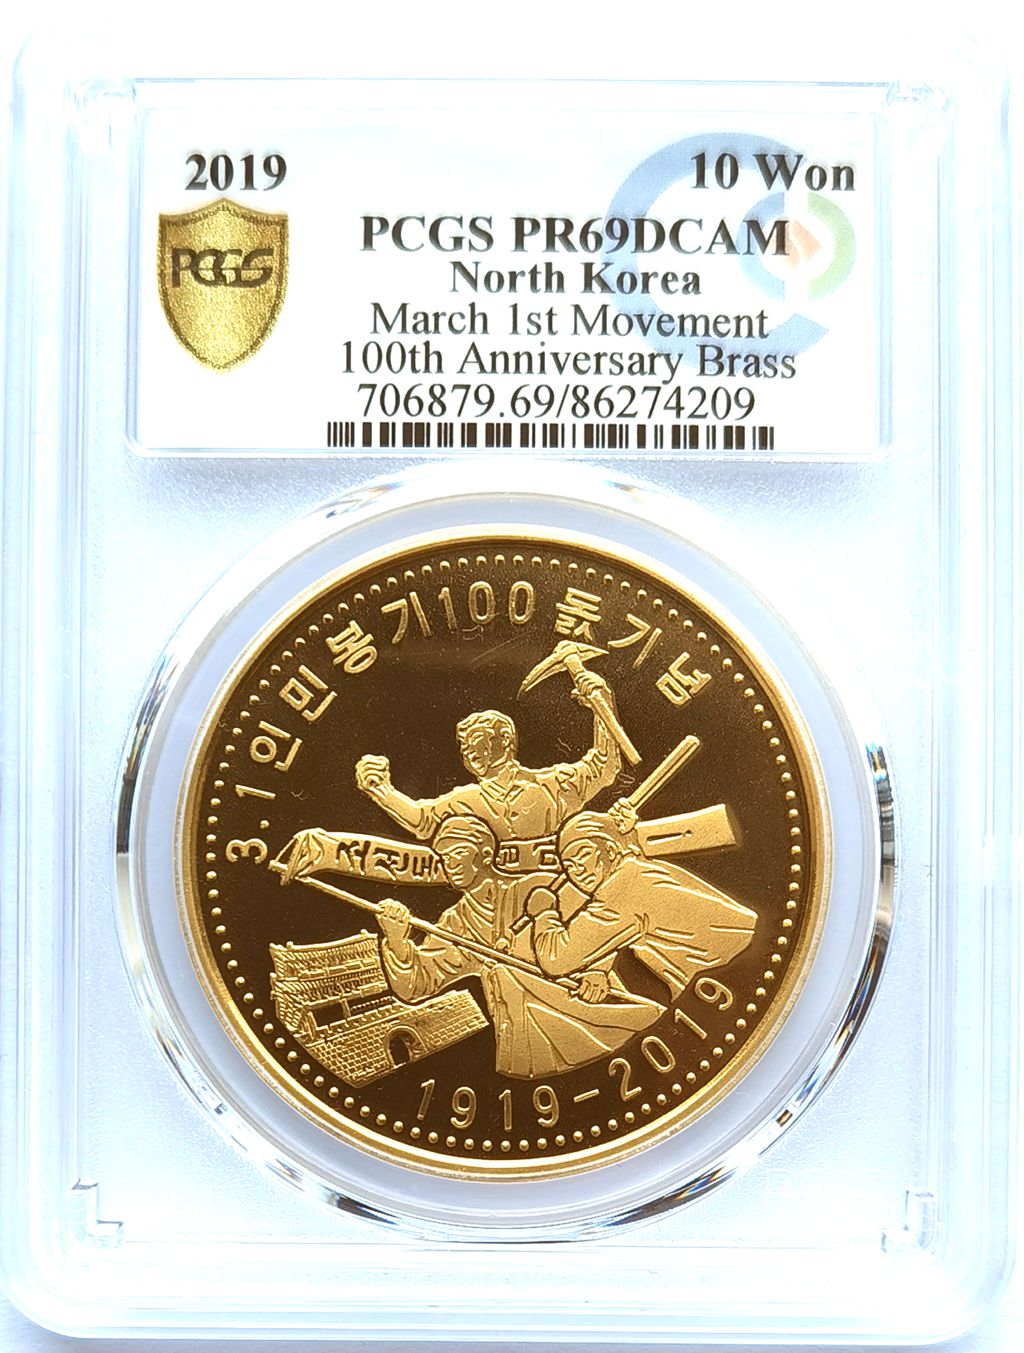 L3382, Korea Coin "March 1st Movement 100th Anni.", Brass 2019, PCGS PR69